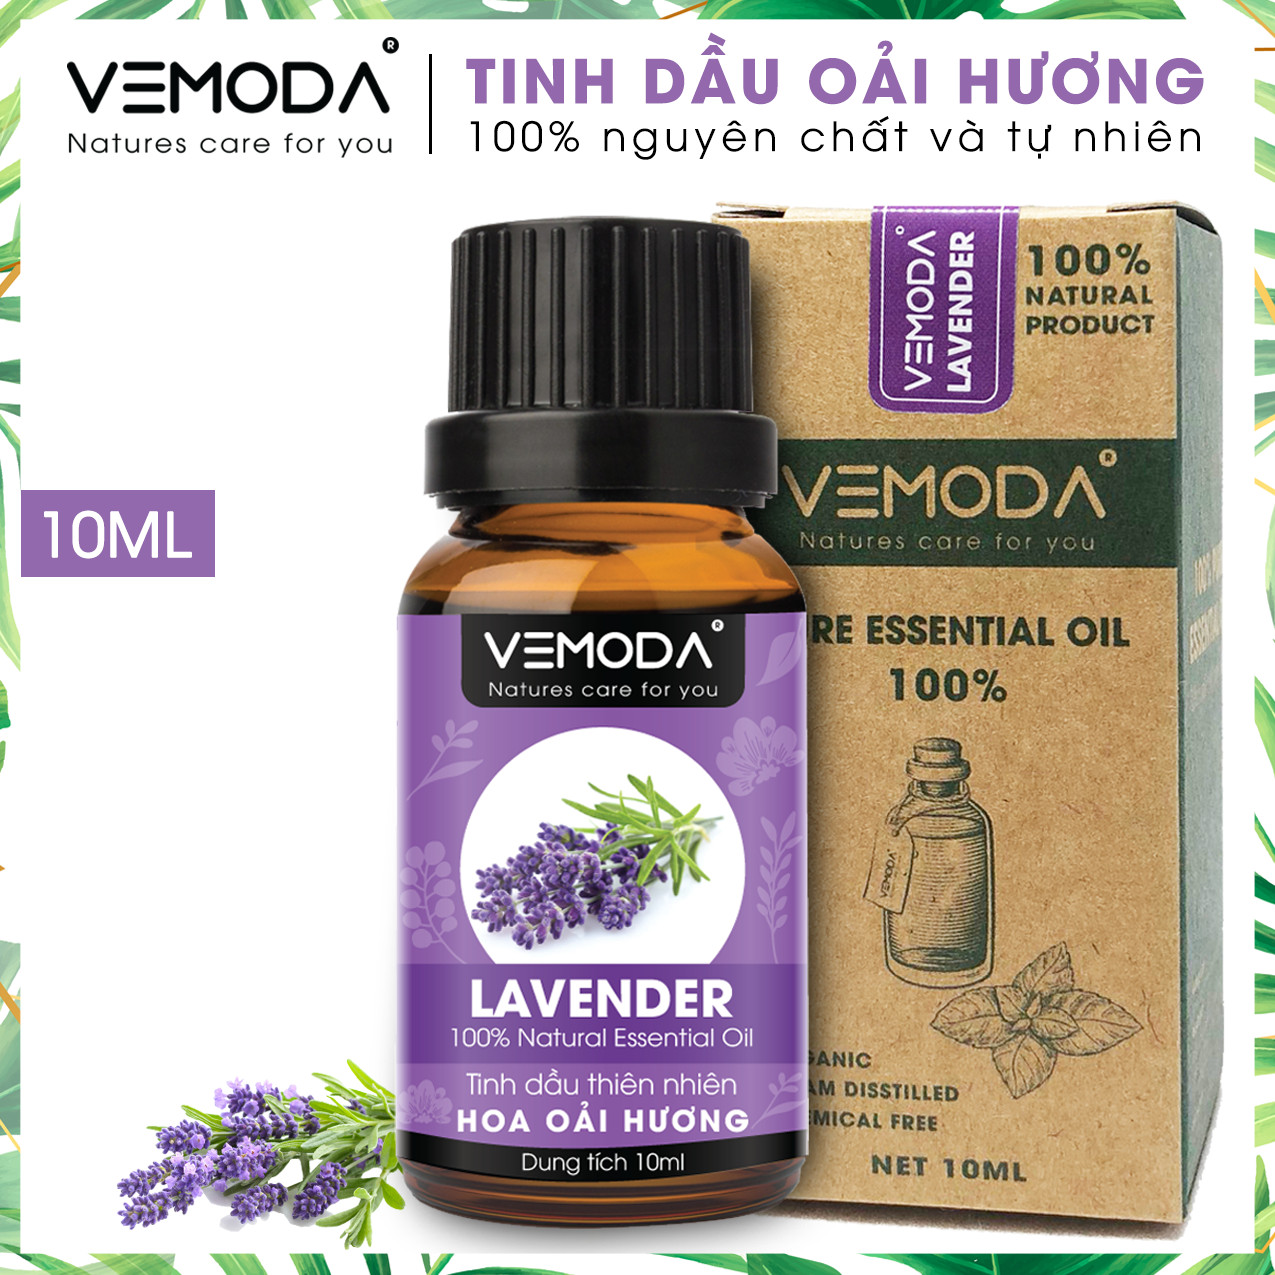 Tinh dầu Oải hương cao cấp. Lavender Essential Oil 10ml. Tinh dầu xông phòng giúp thư giãn, giảm căng thẳng, khử mùi, nâng cao chất lượng giấc ngủ. Tinh dầu thơm phòng cao cấp Vemoda